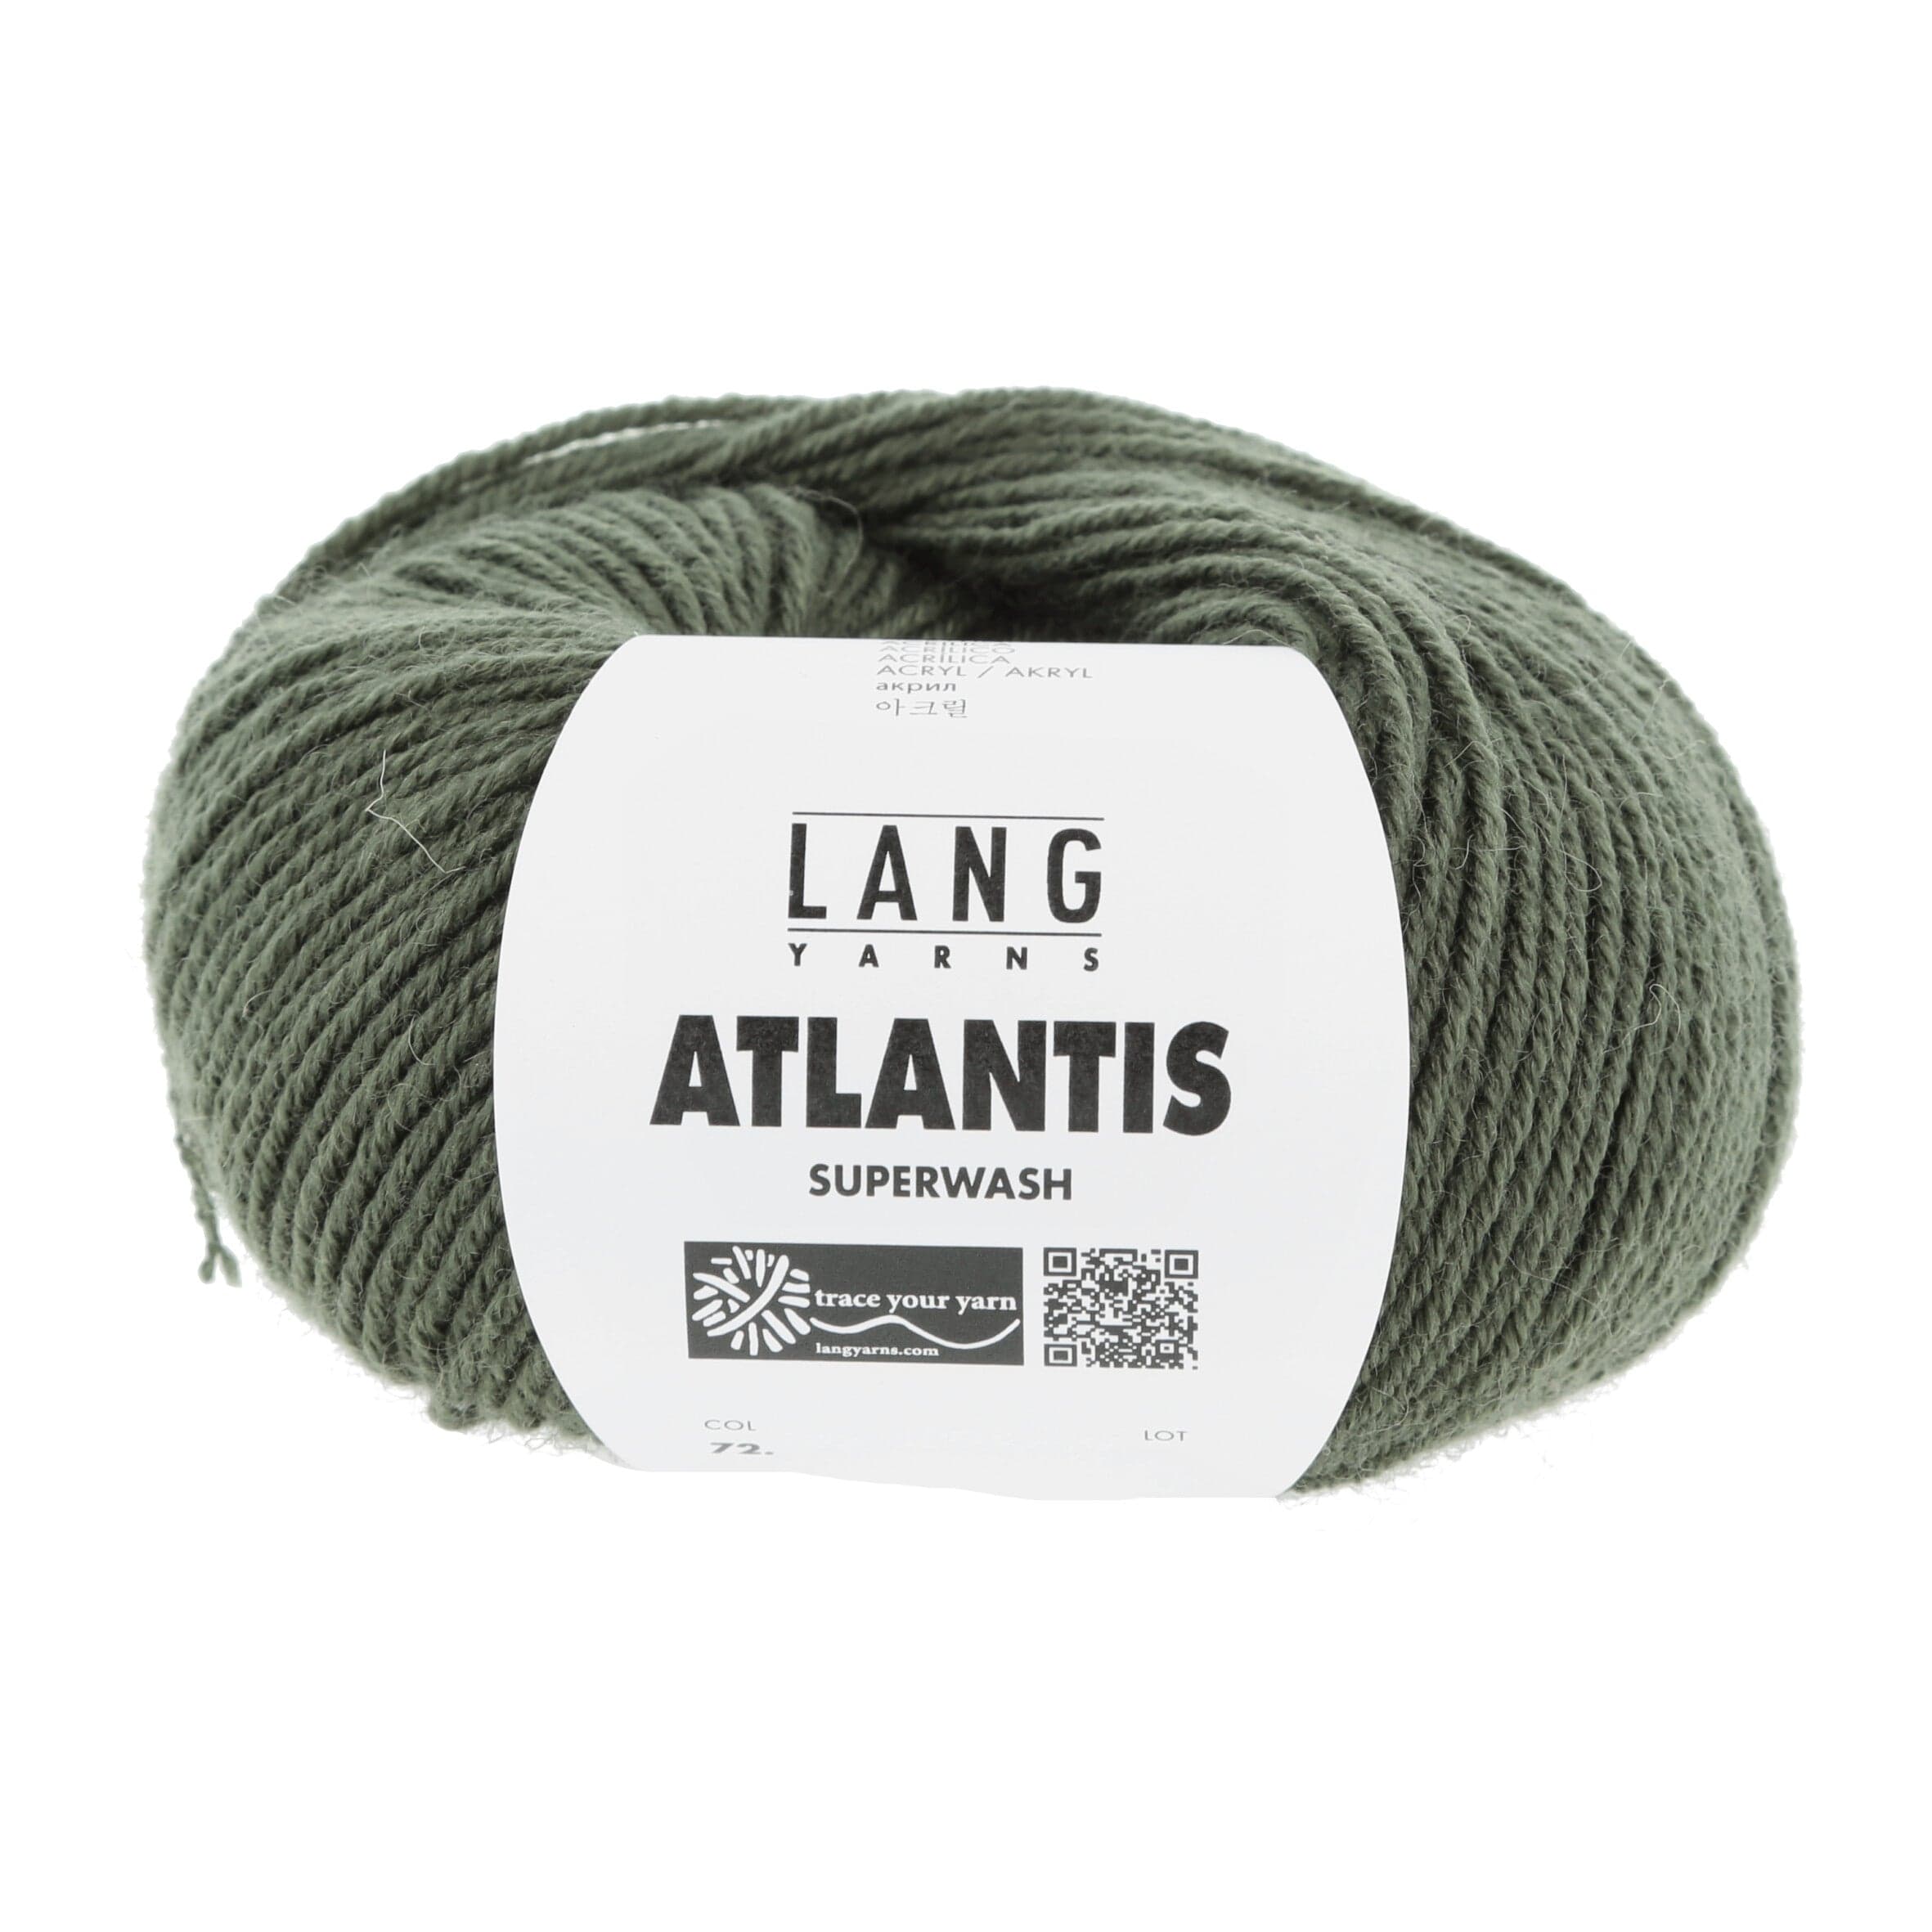 ATLANTIS von LANG YARNS jetzt online kaufen bei OONIQUE